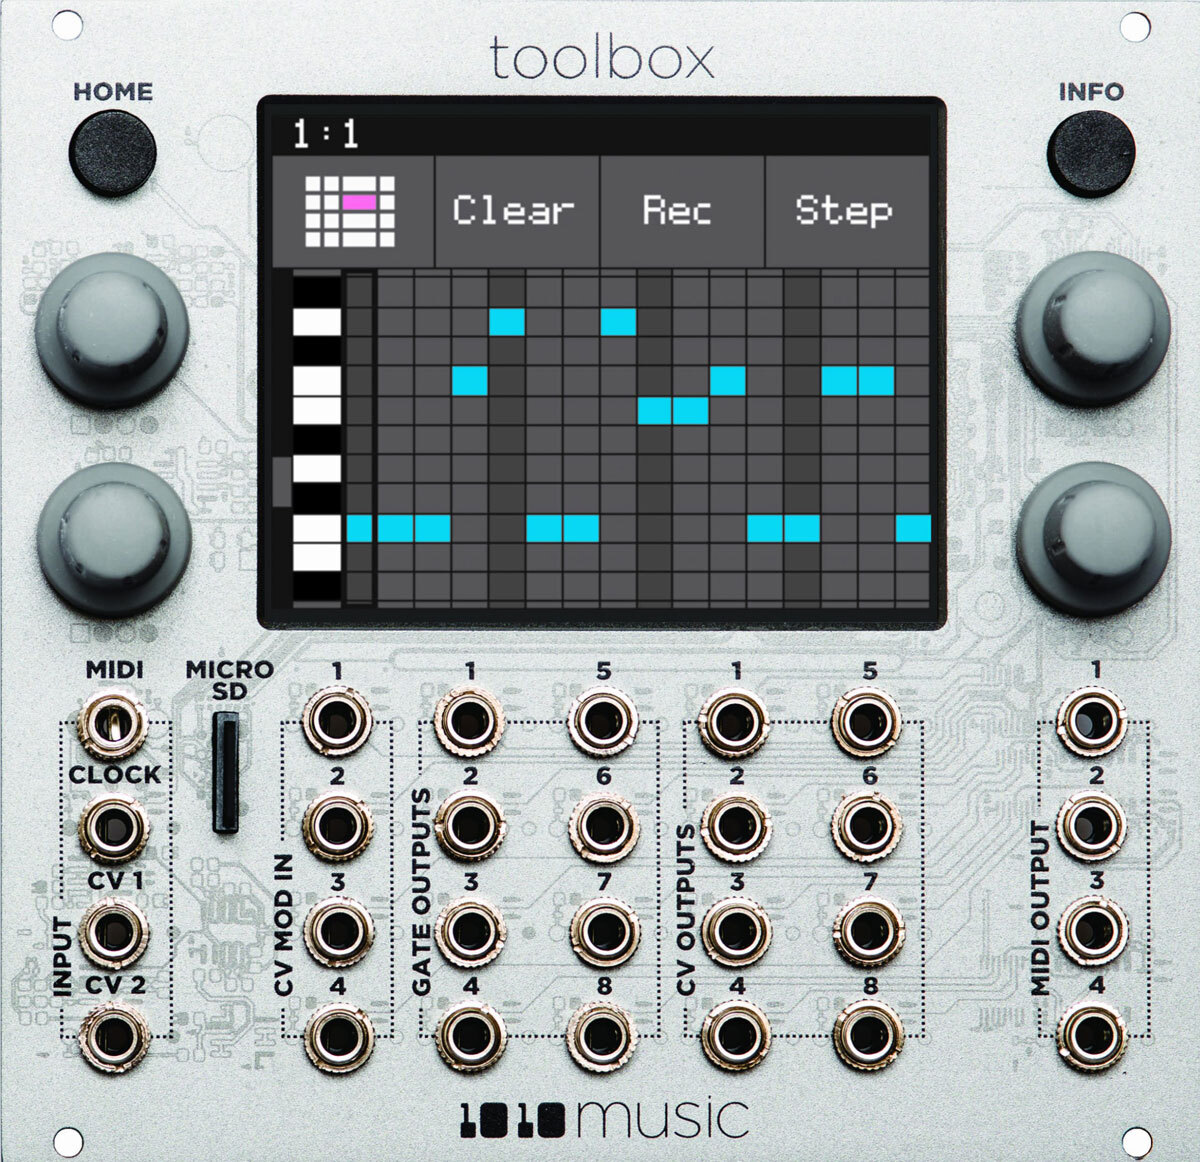 1010 Music Toolbox